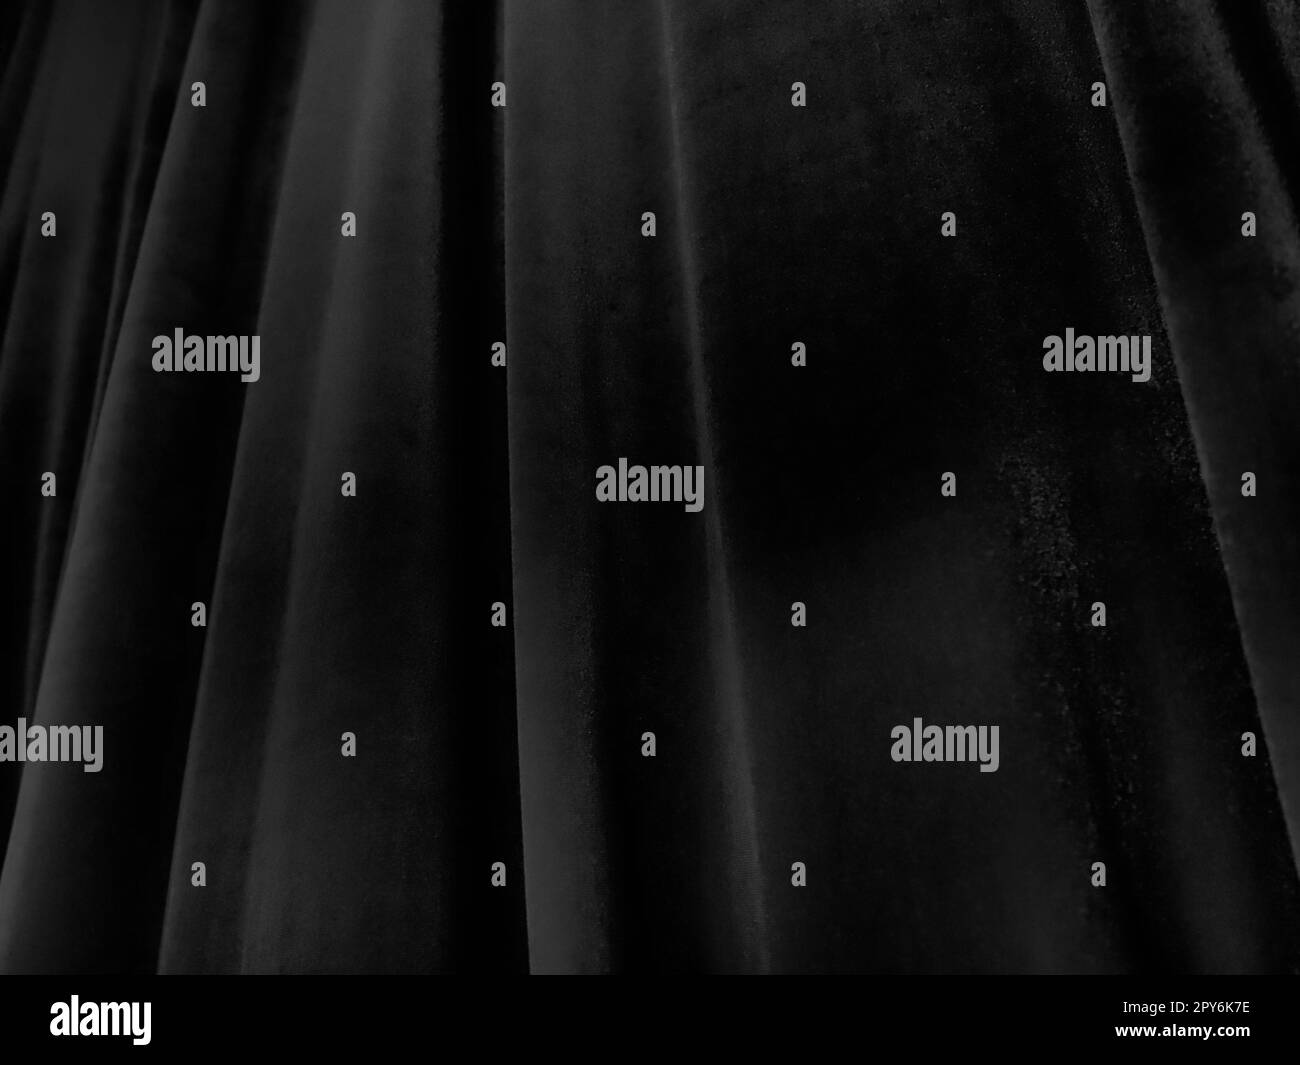 Weiche Wellen auf schwarzen Samtvorhängen. Stilisiertes Unschärfe-Bild. Dunkle Vorhänge aus angenehmem Stoff. Falten an den Vorhängen. Abstrakter schwarzer und grauer Hintergrund. Stockfoto